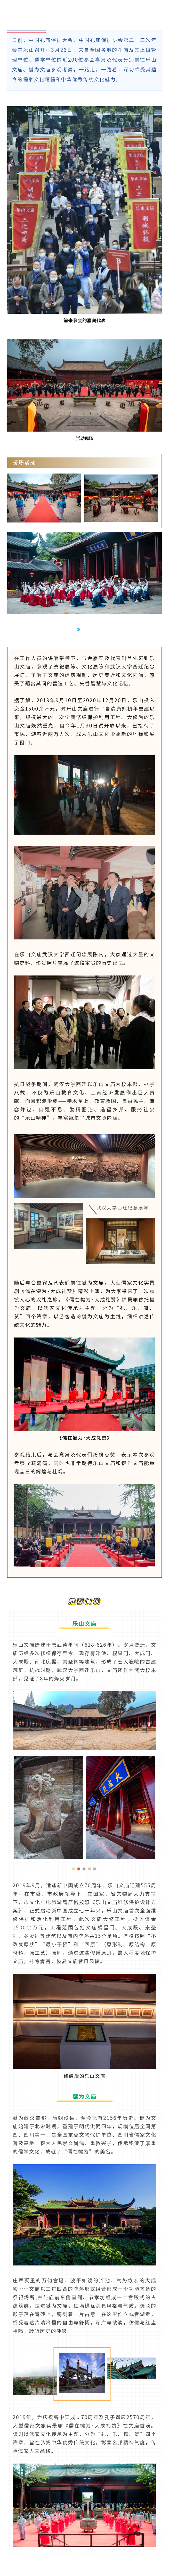 中国孔庙保护大会代表参观考察